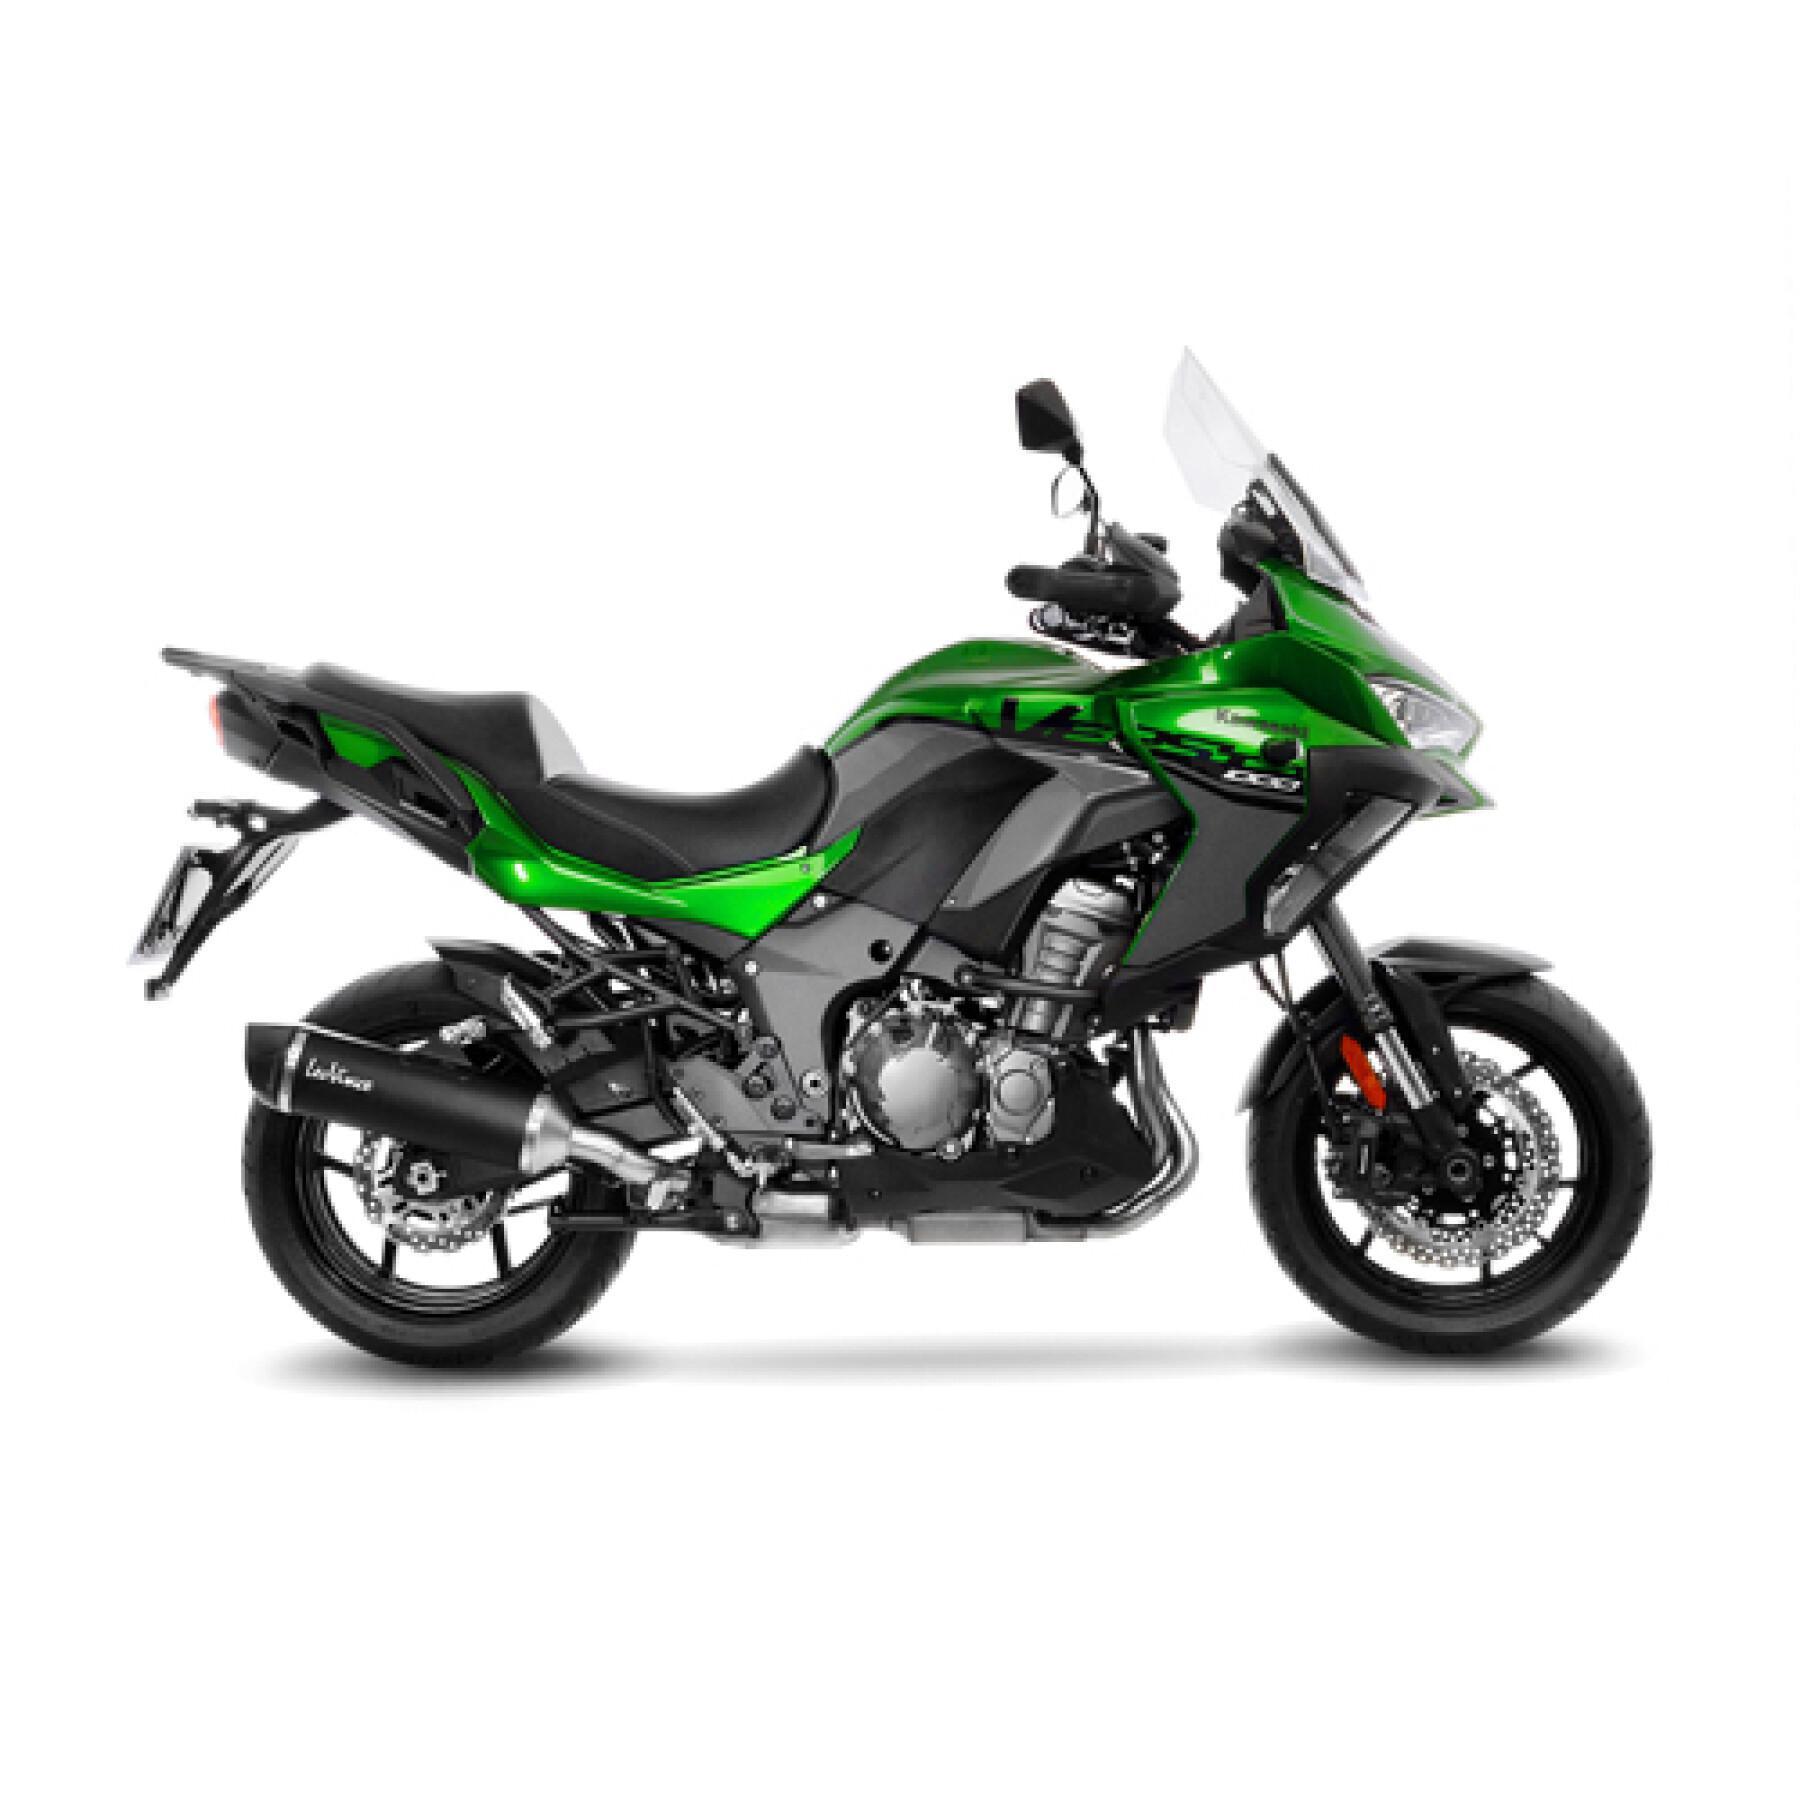 scarico della moto Leovince Nero Kawasaki Versys 1000 2019-2021